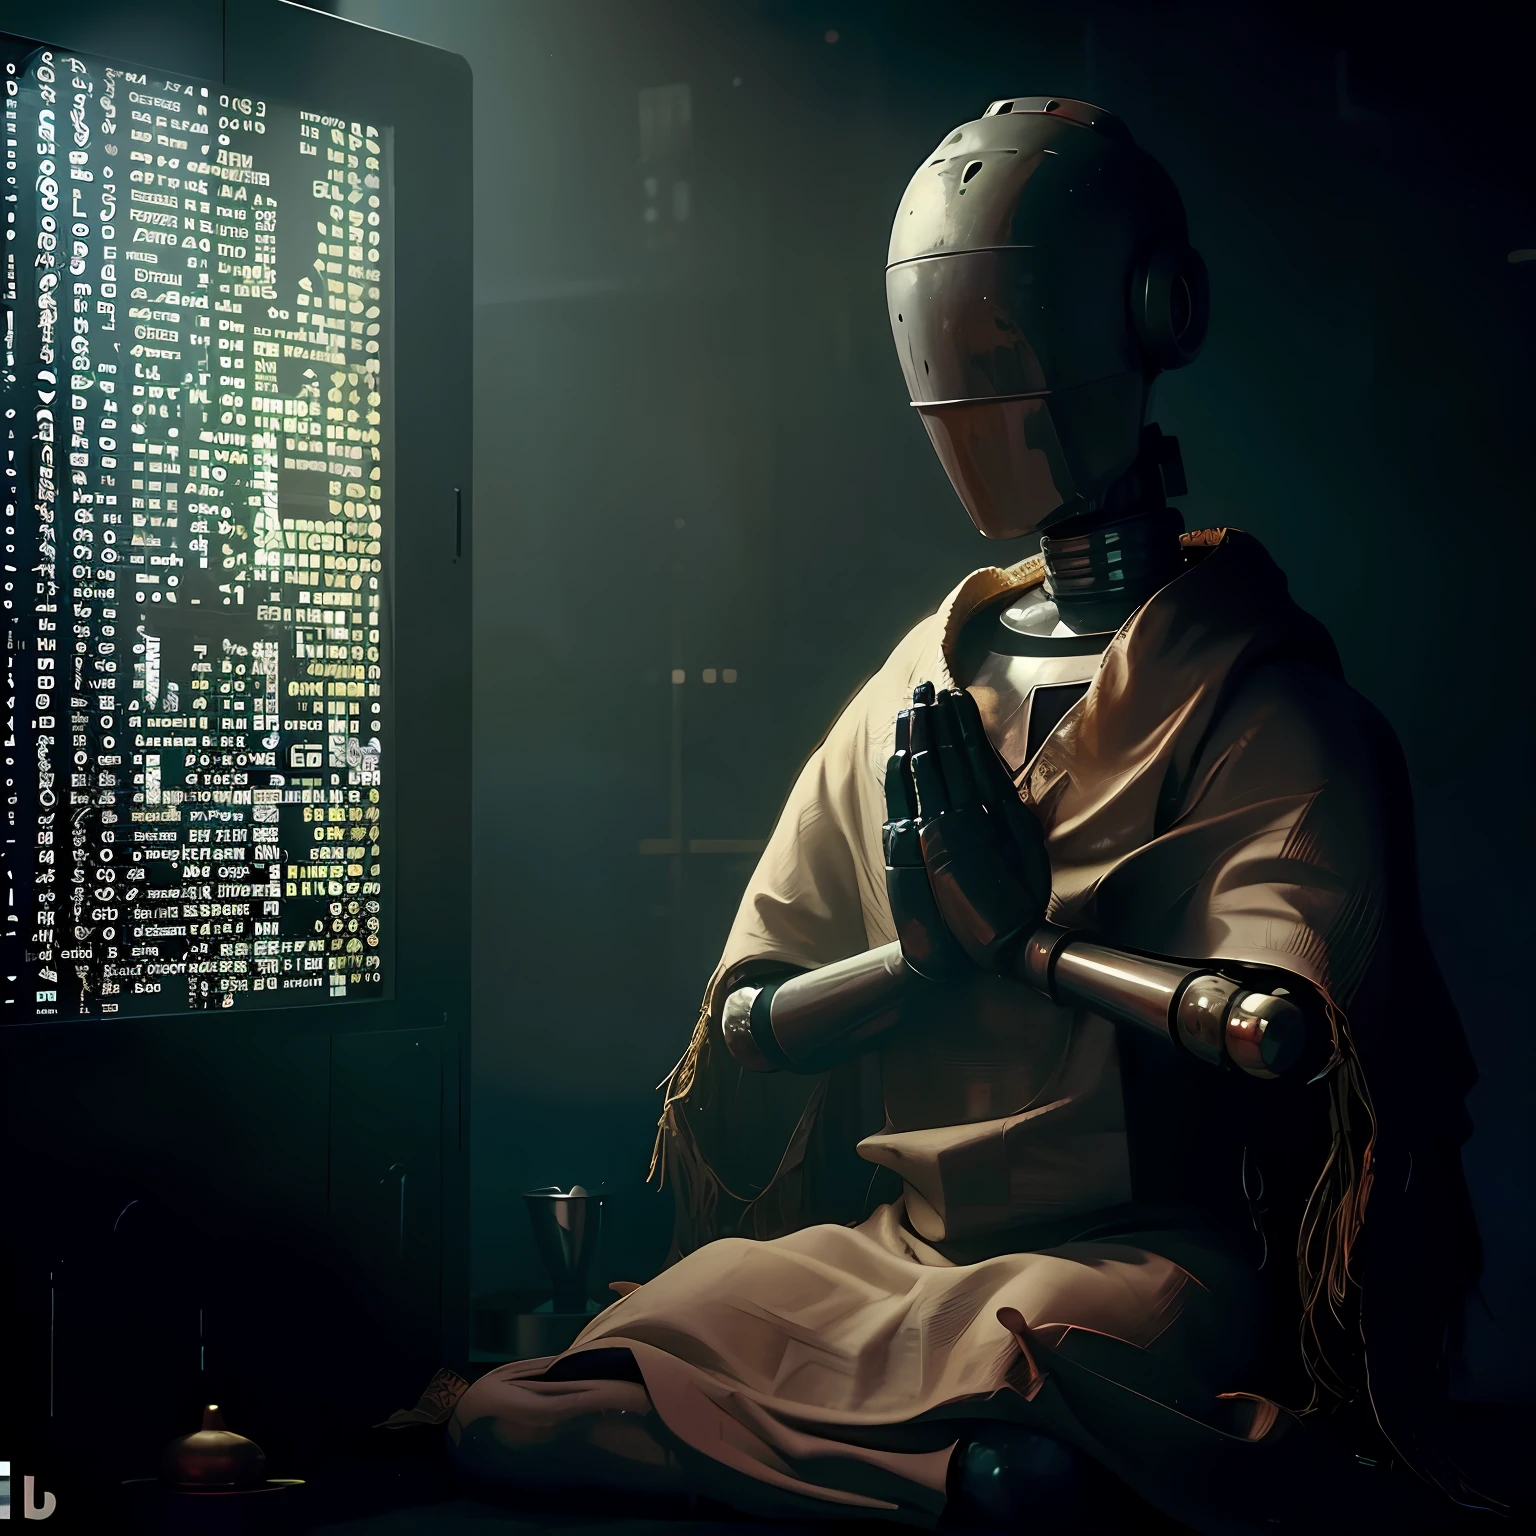 Há um robô sentado em frente a uma tela de computador, religião do robô, meditação zen cyberpunk, um ciborgue meditando, deus da inteligência artificial, Cyberpunk ortodoxo, deus da inteligência artificials, ciência religiosa, Cyberpunk Jesus Cristo, papa robô, O metaverso criptografado, a vinda da singularidade da IA, inteligência artificial maligna, ( ( virar um pouco | Deus da Arte da IA ) )